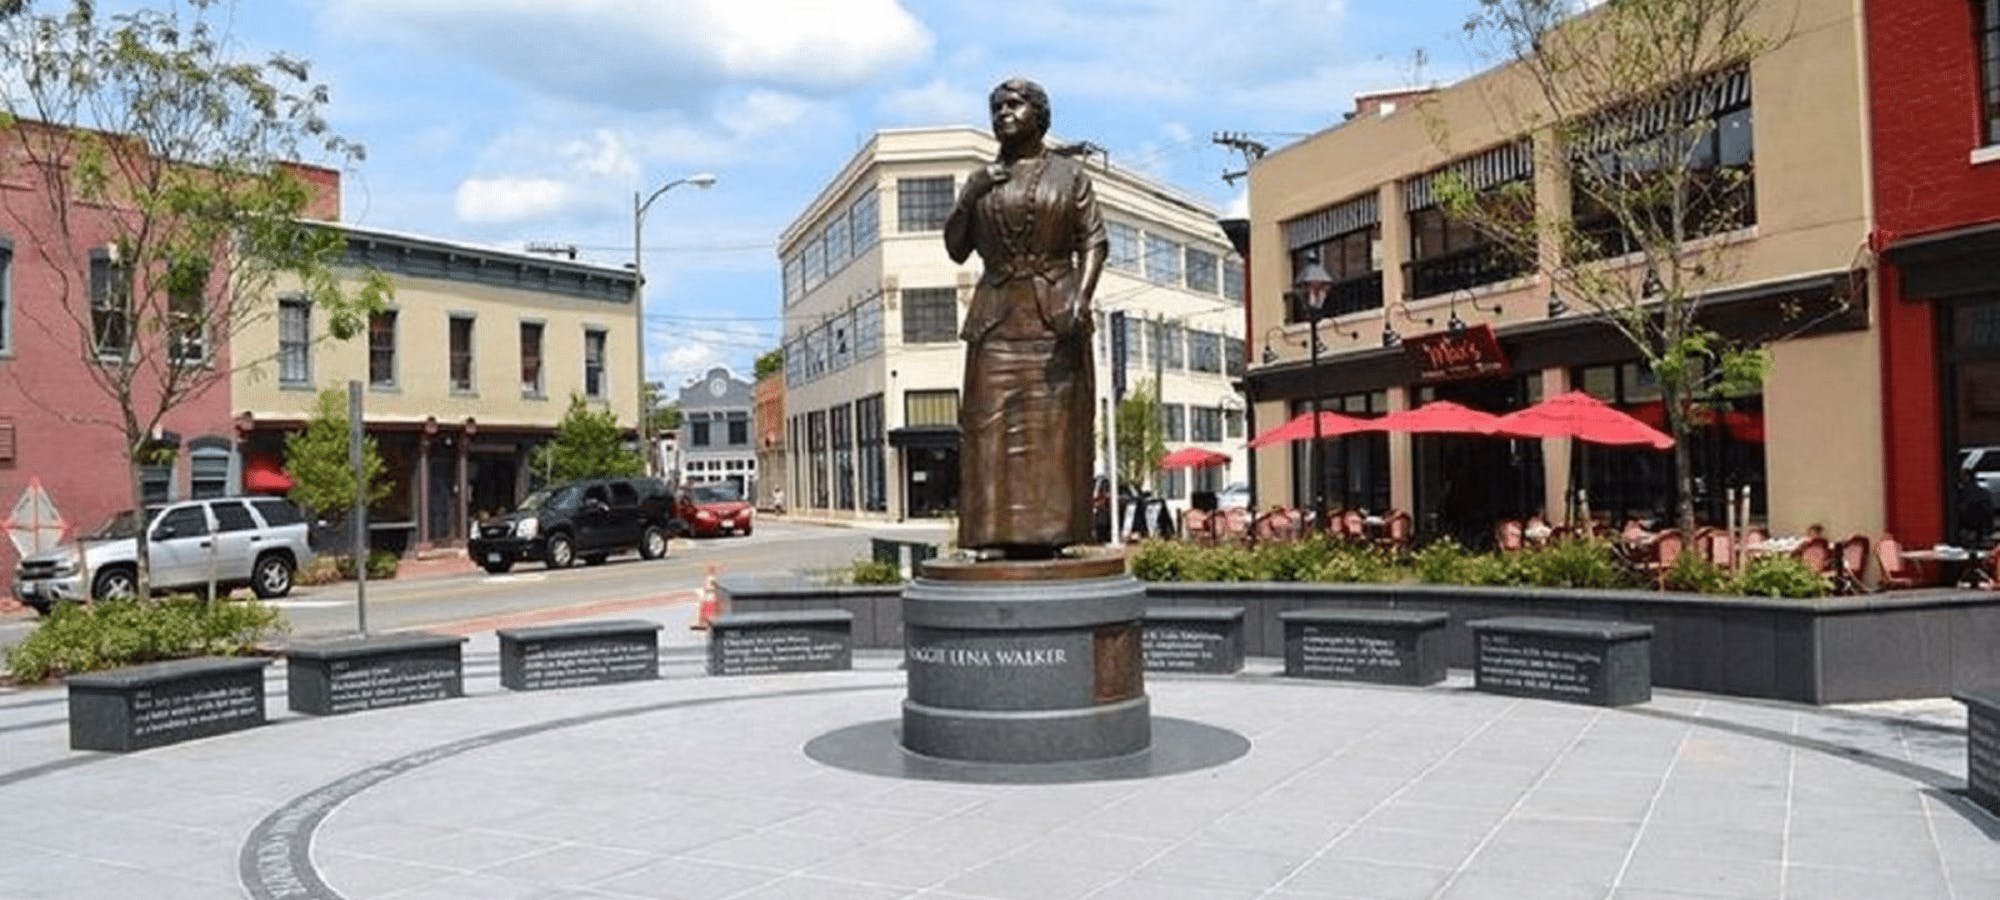 Maggie Walker Plaza in Richmond, Virginia